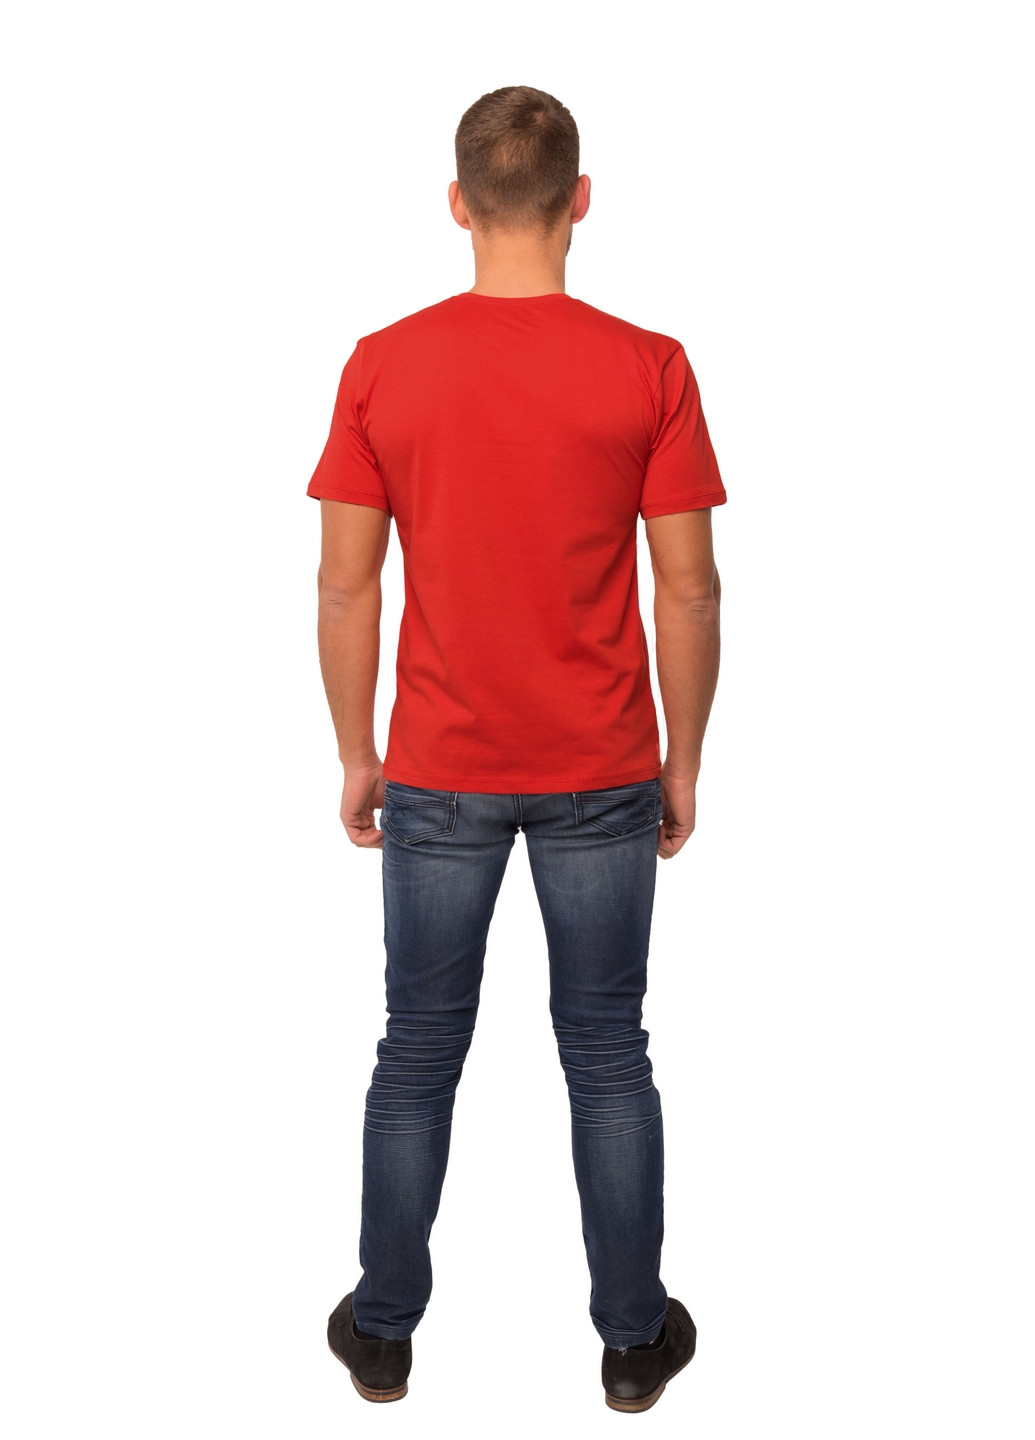 Красная демисезонная футболка мужская Наталюкс 12-1343